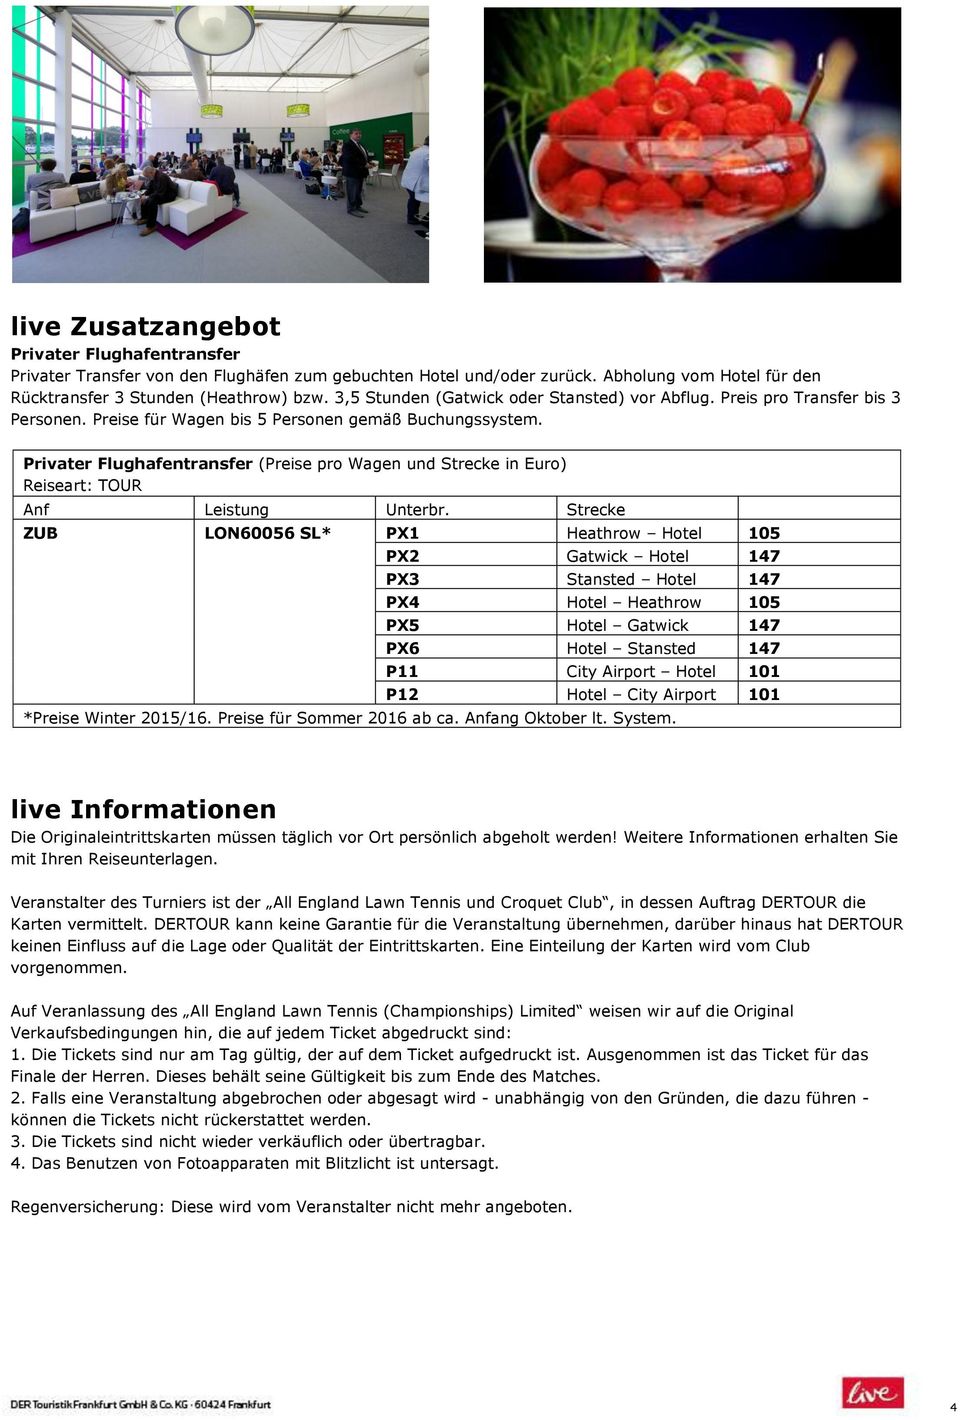 Privater Flughafentransfer (Preise pro Wagen und Strecke in Euro) Reiseart: TOUR Anf Leistung Unterbr.